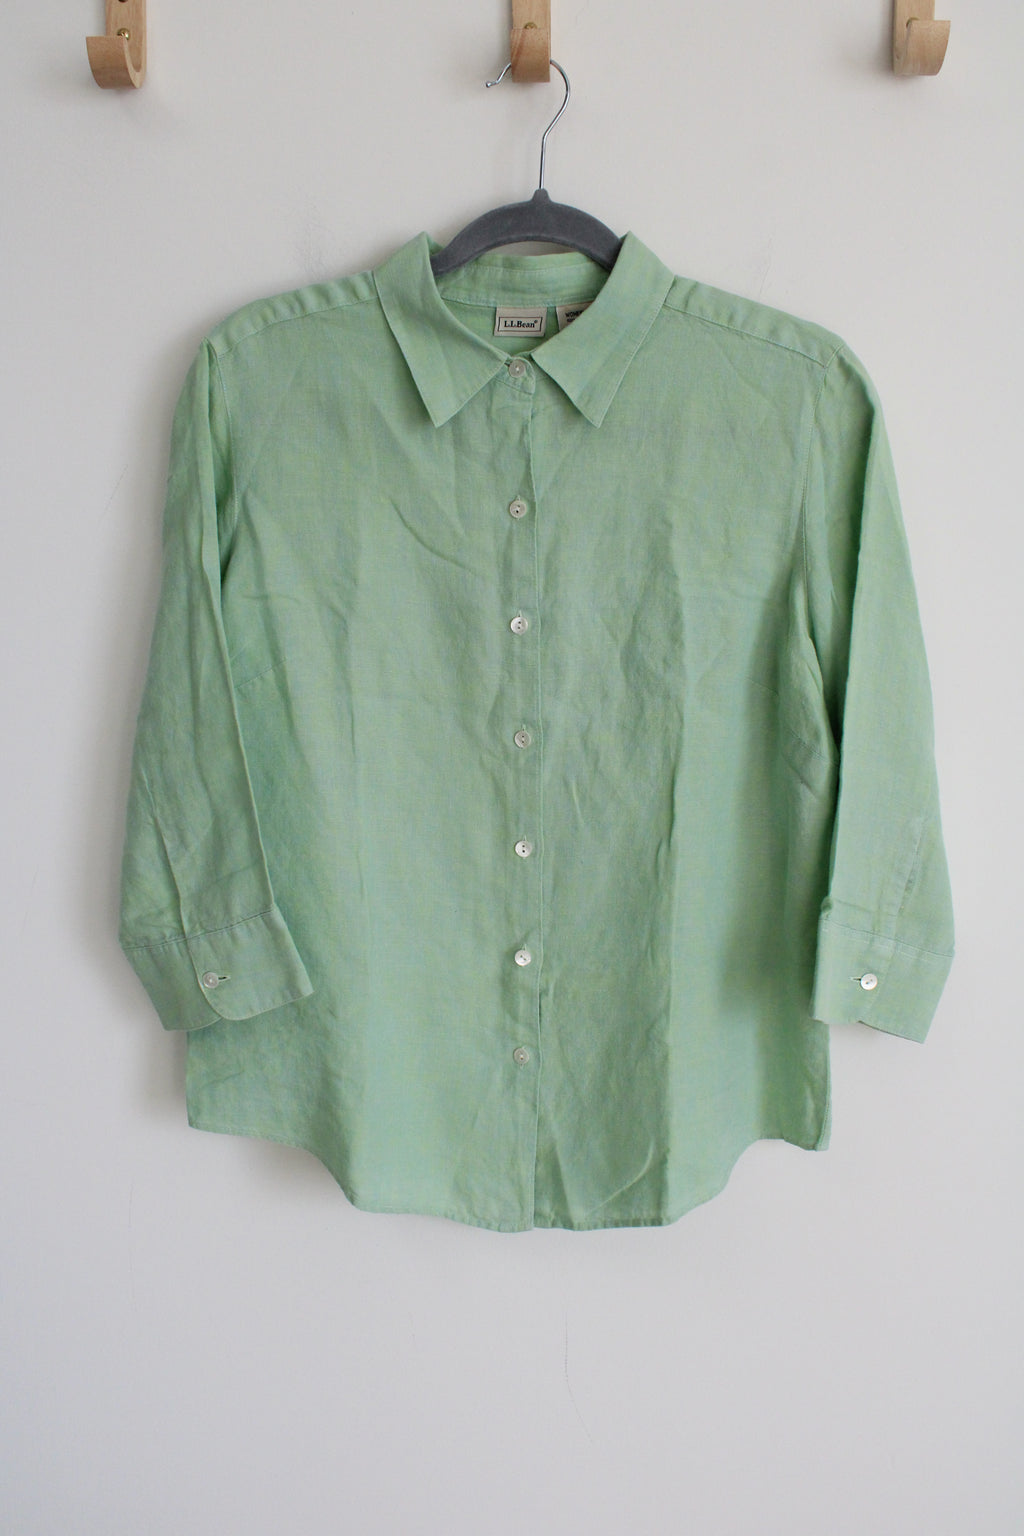 L.L. Bean Linen Green Button Down Shirt | M